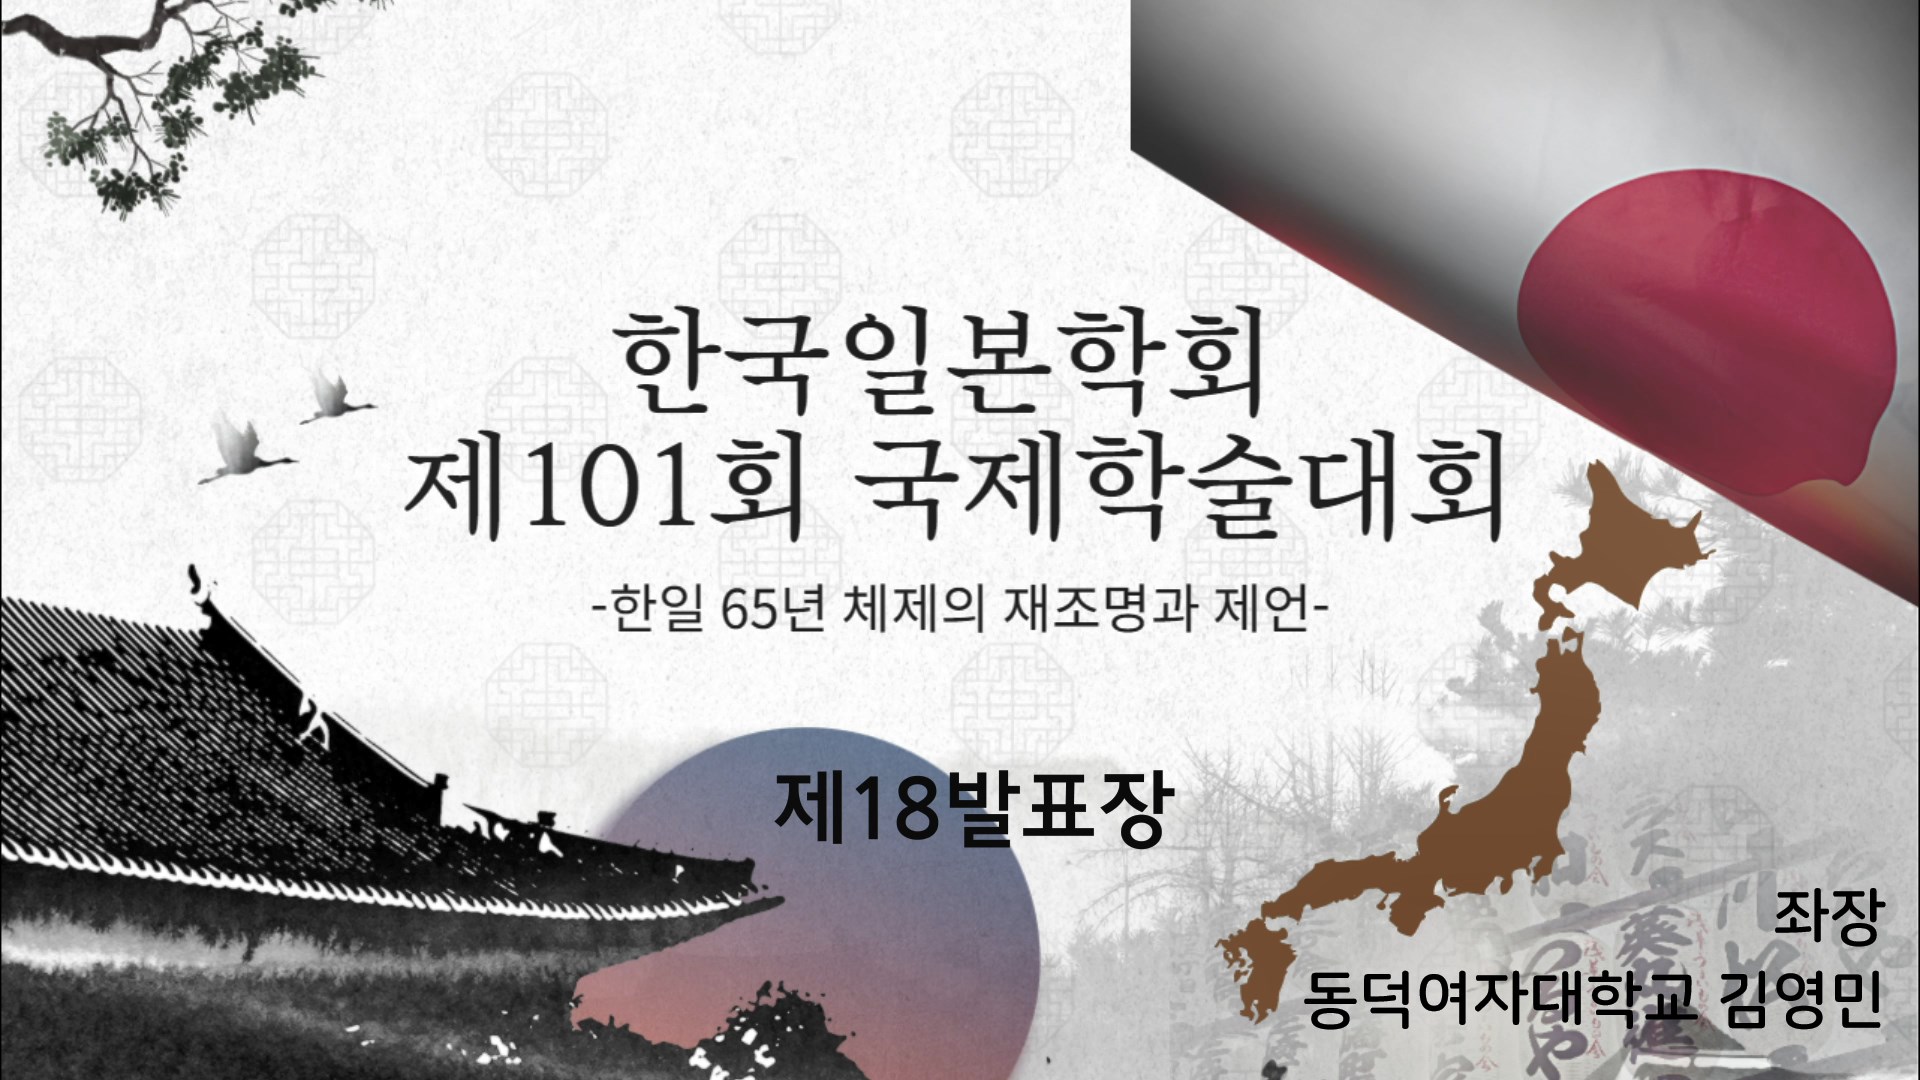 한국일본학회 제101회 국제학술대회 제18발표장